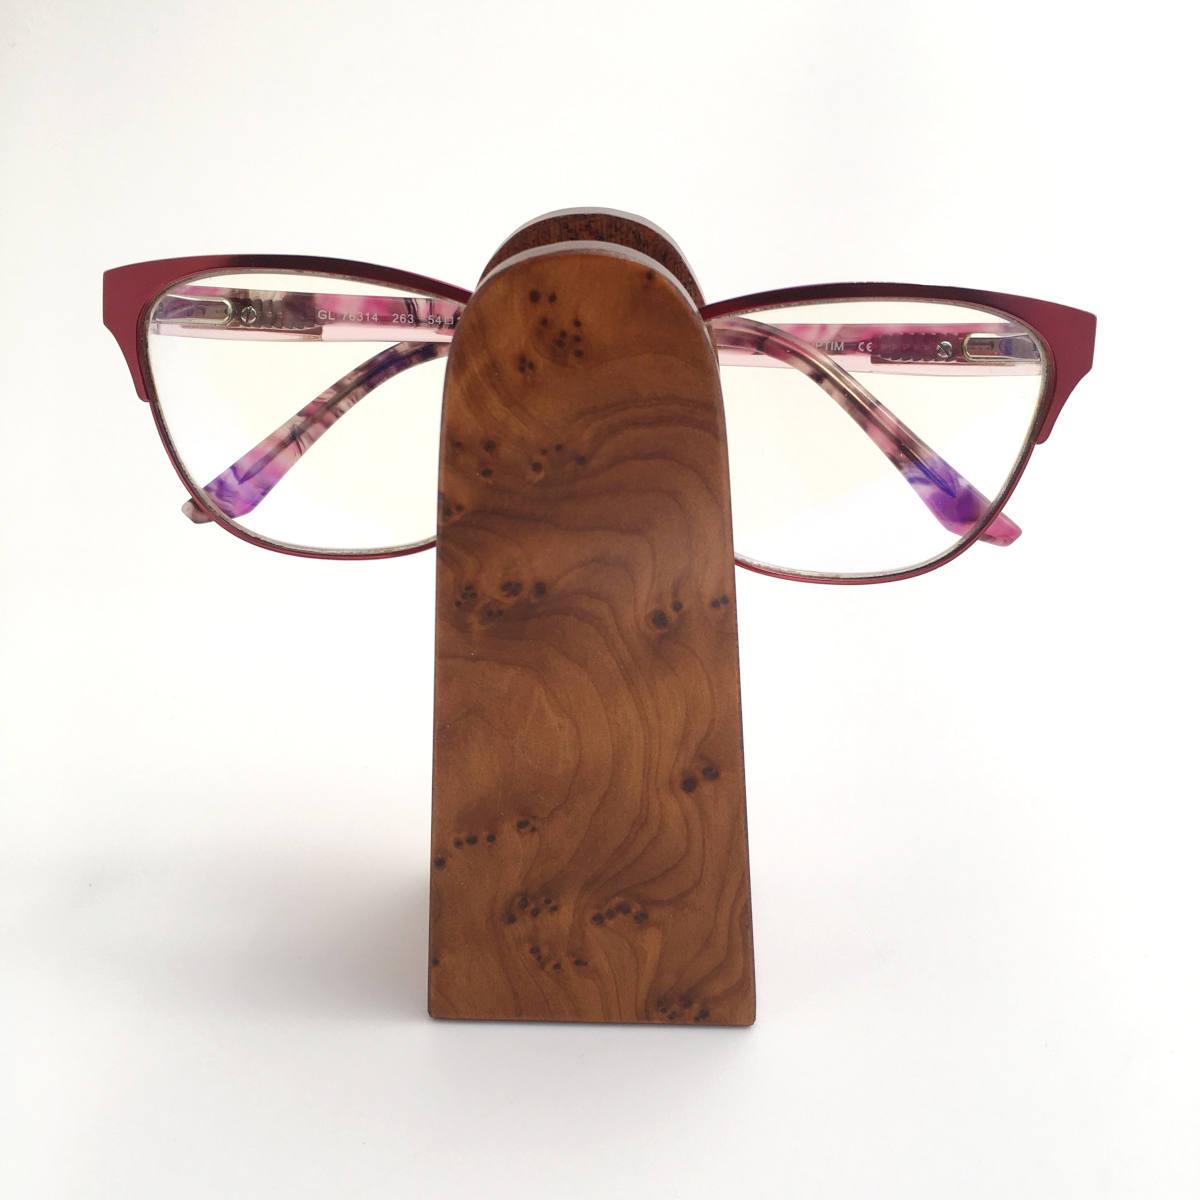 Stand porte-lunettes en bois par Orphéo — Wikifab